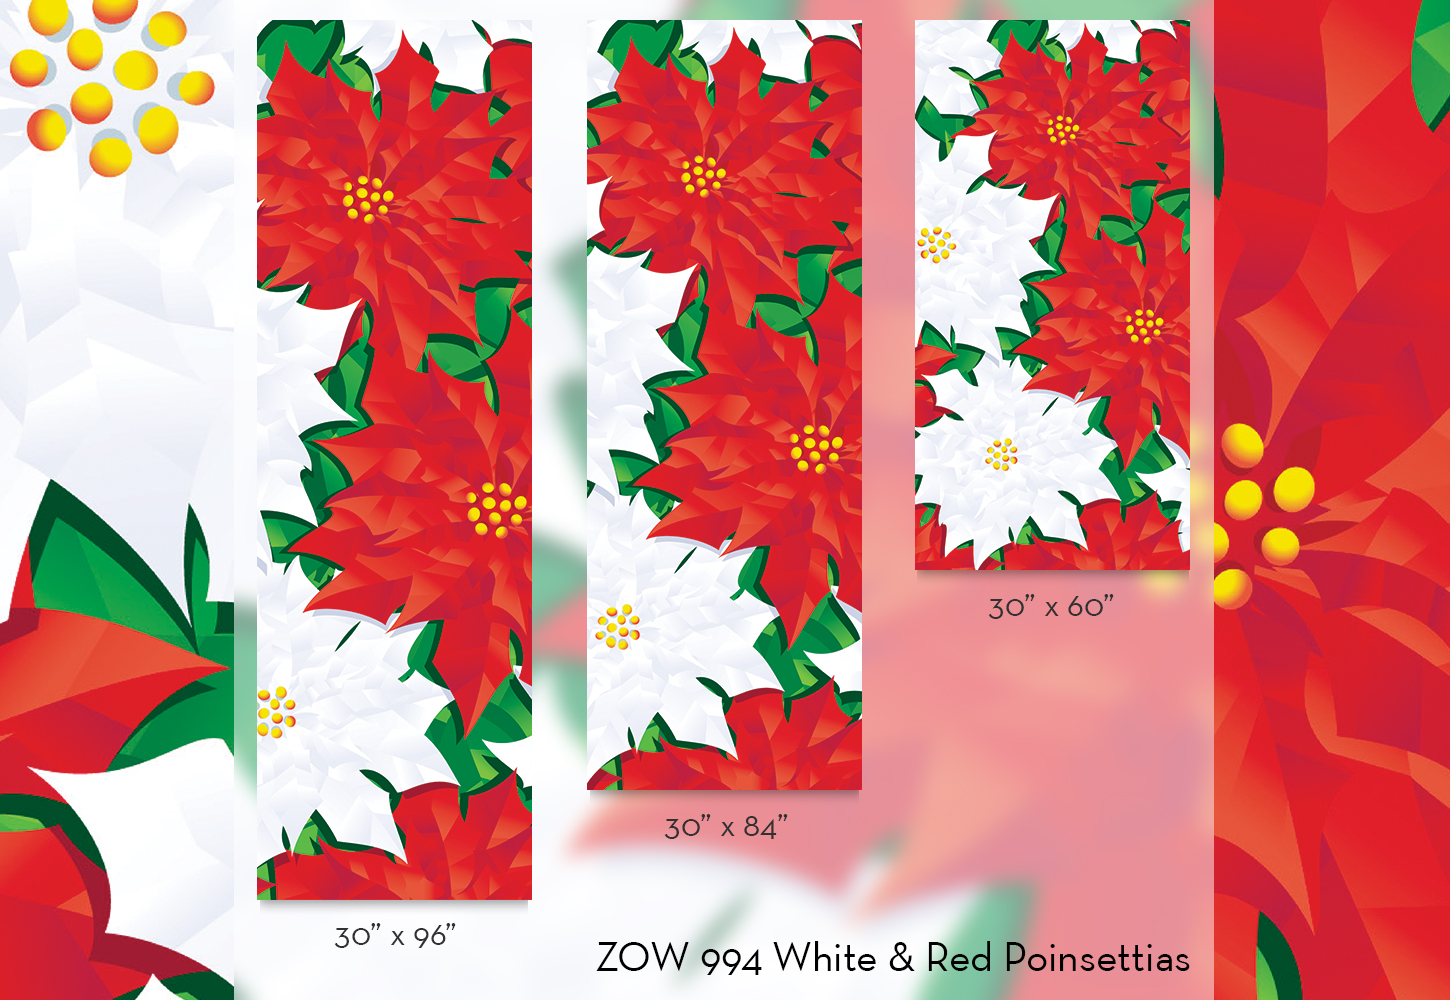 ZOW 994 White & Red Poinsettias